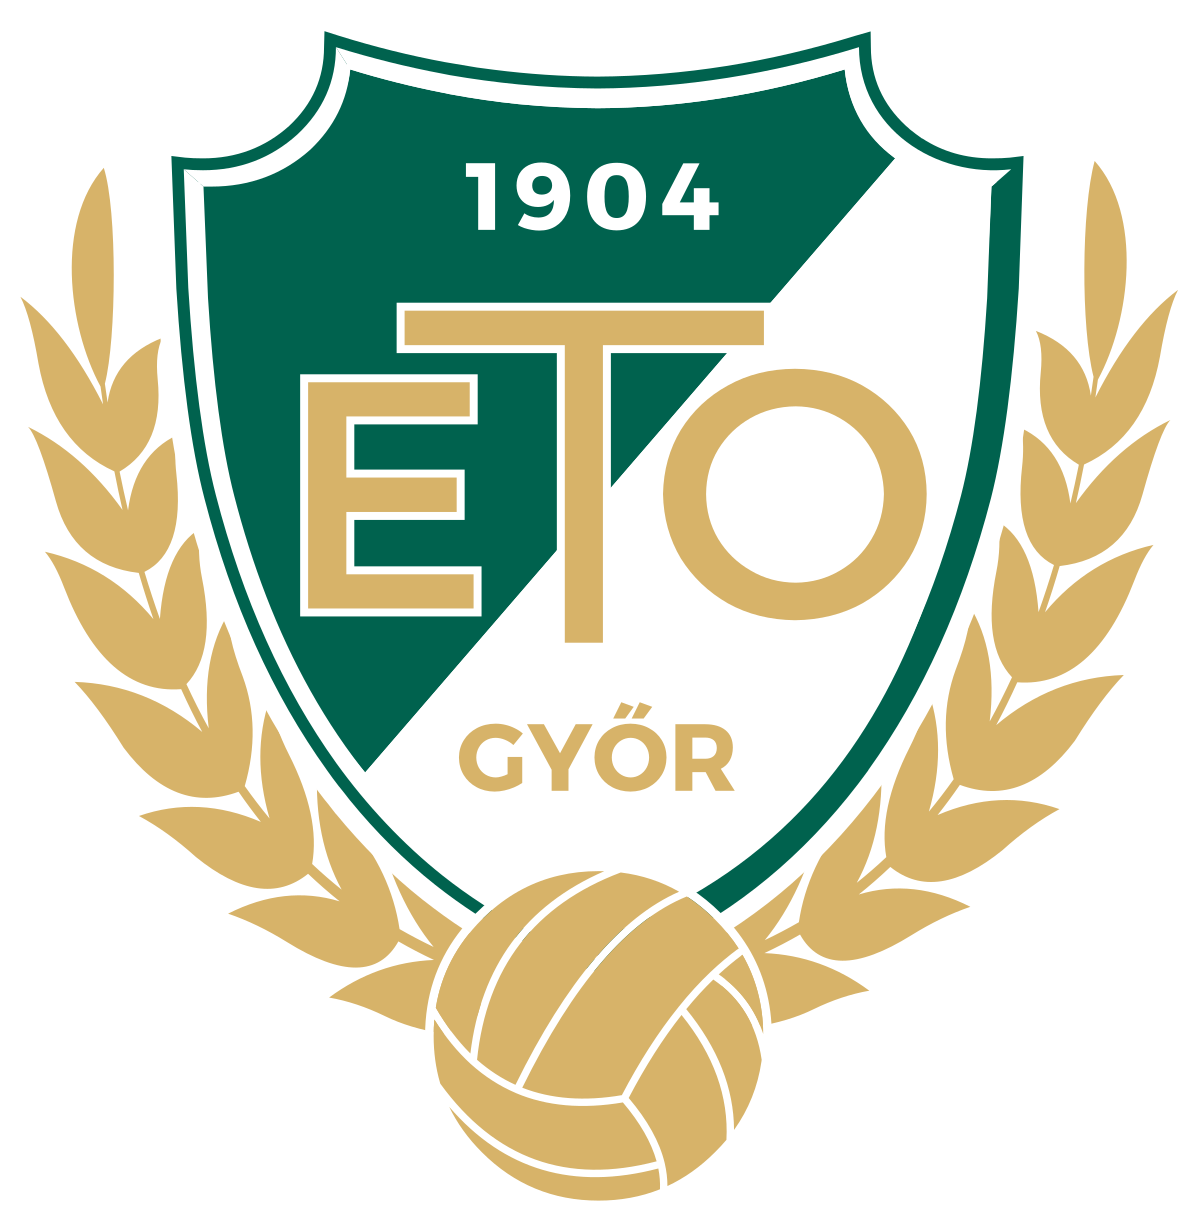 ETO FC Gyr